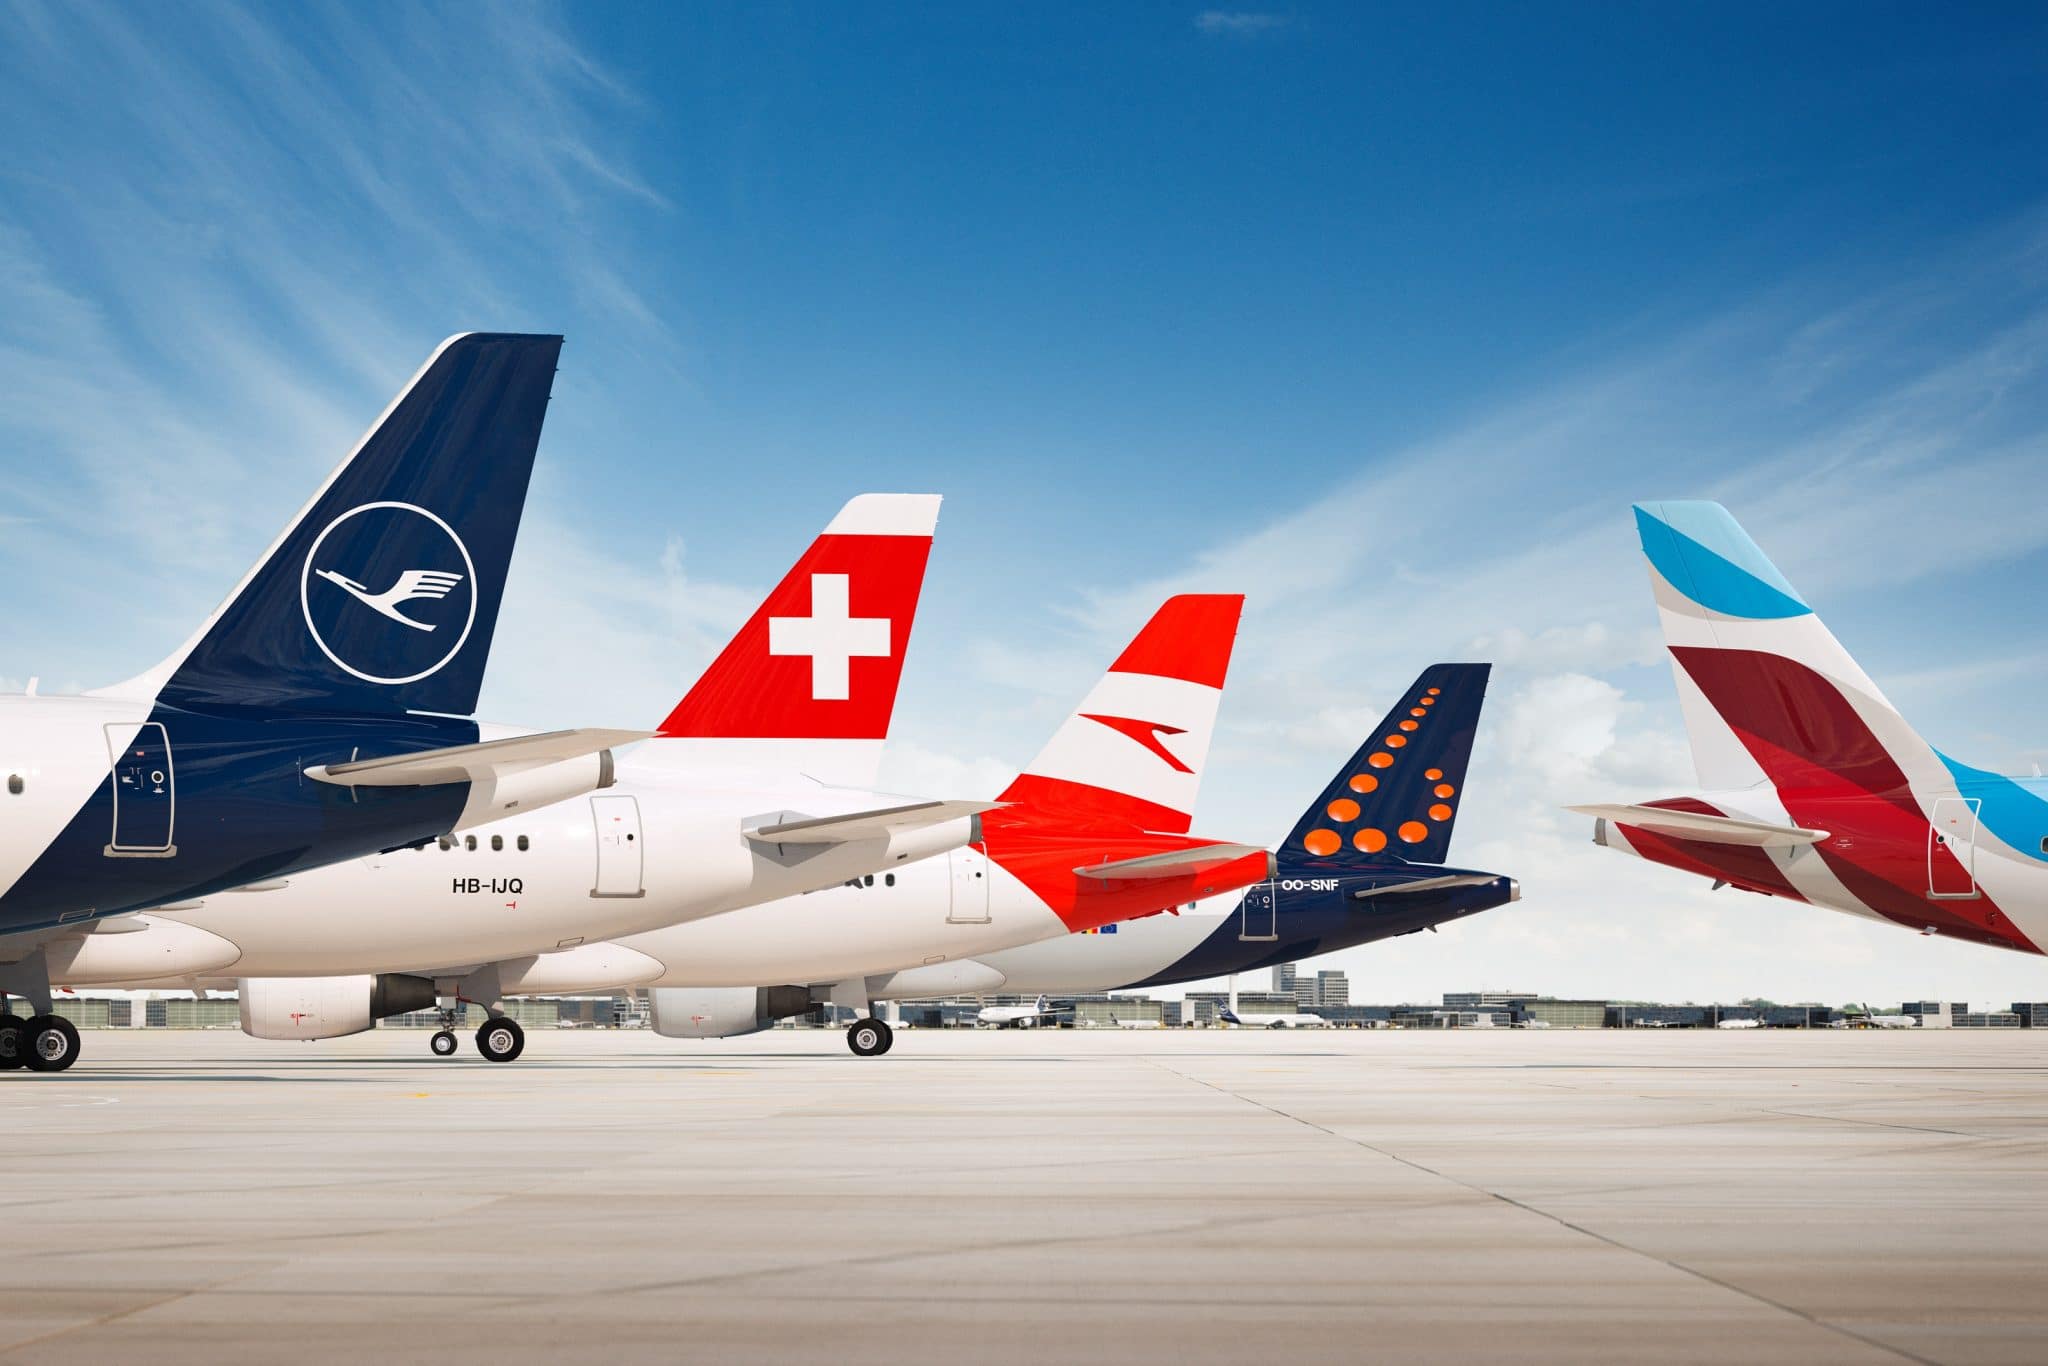 สายการบินใน Lufthansa ประกาศนโยบายขยายการเปลี่ยนแปลงเที่ยวบินสำหรับผู้โดยสาร จากผลกระทบไวรัสโคโรน่า 19